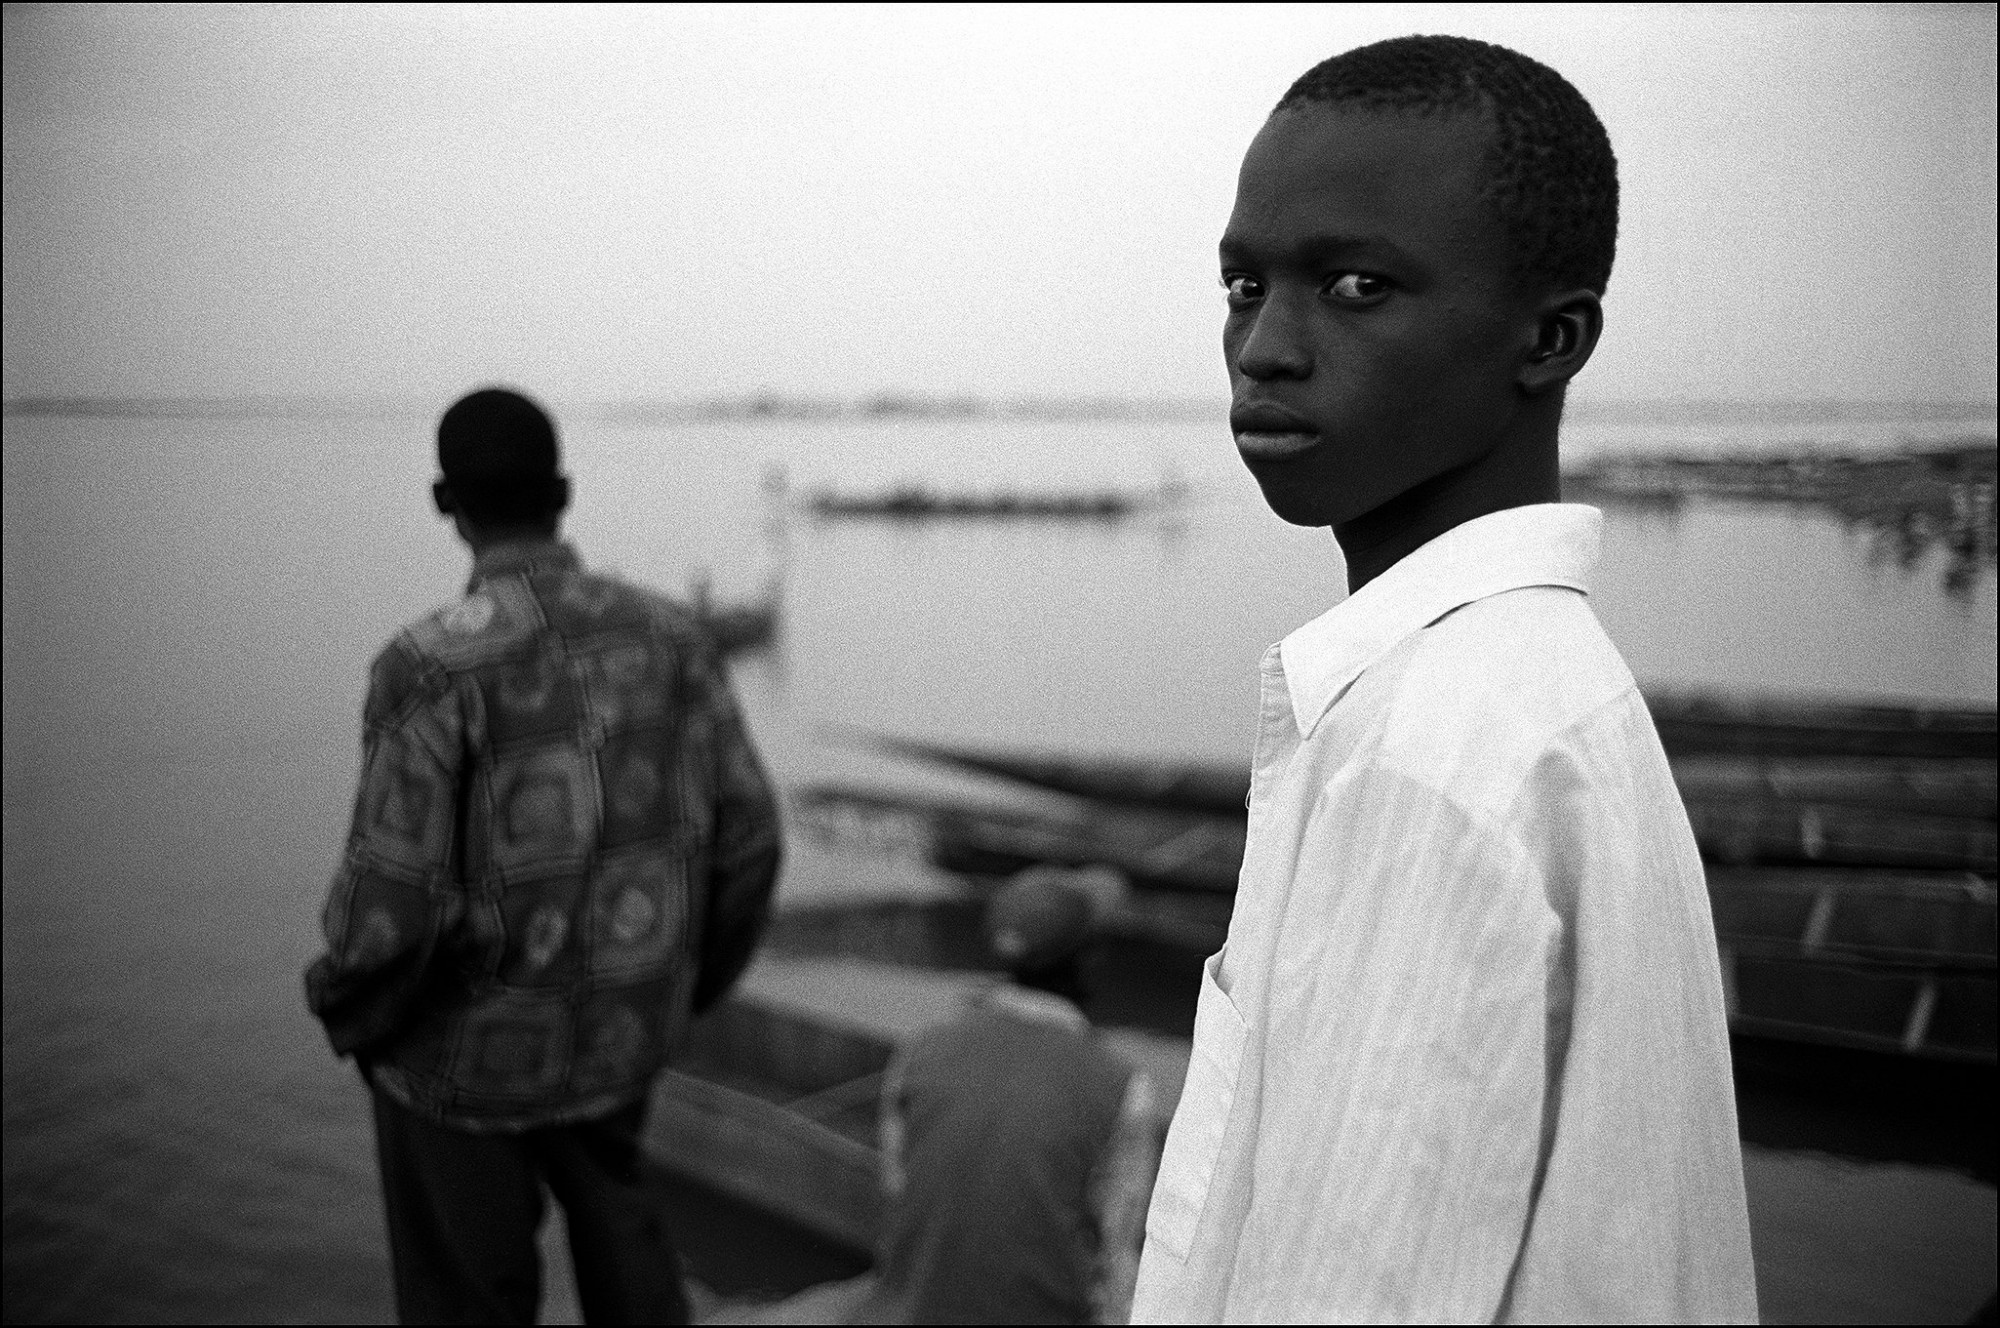 Afbeelding: ART- Fotografie © Dominique Van Huffel, uit de reeks: De kleur van zwart. De ziener, oevers van de Niger, Koulikouro, Mali.